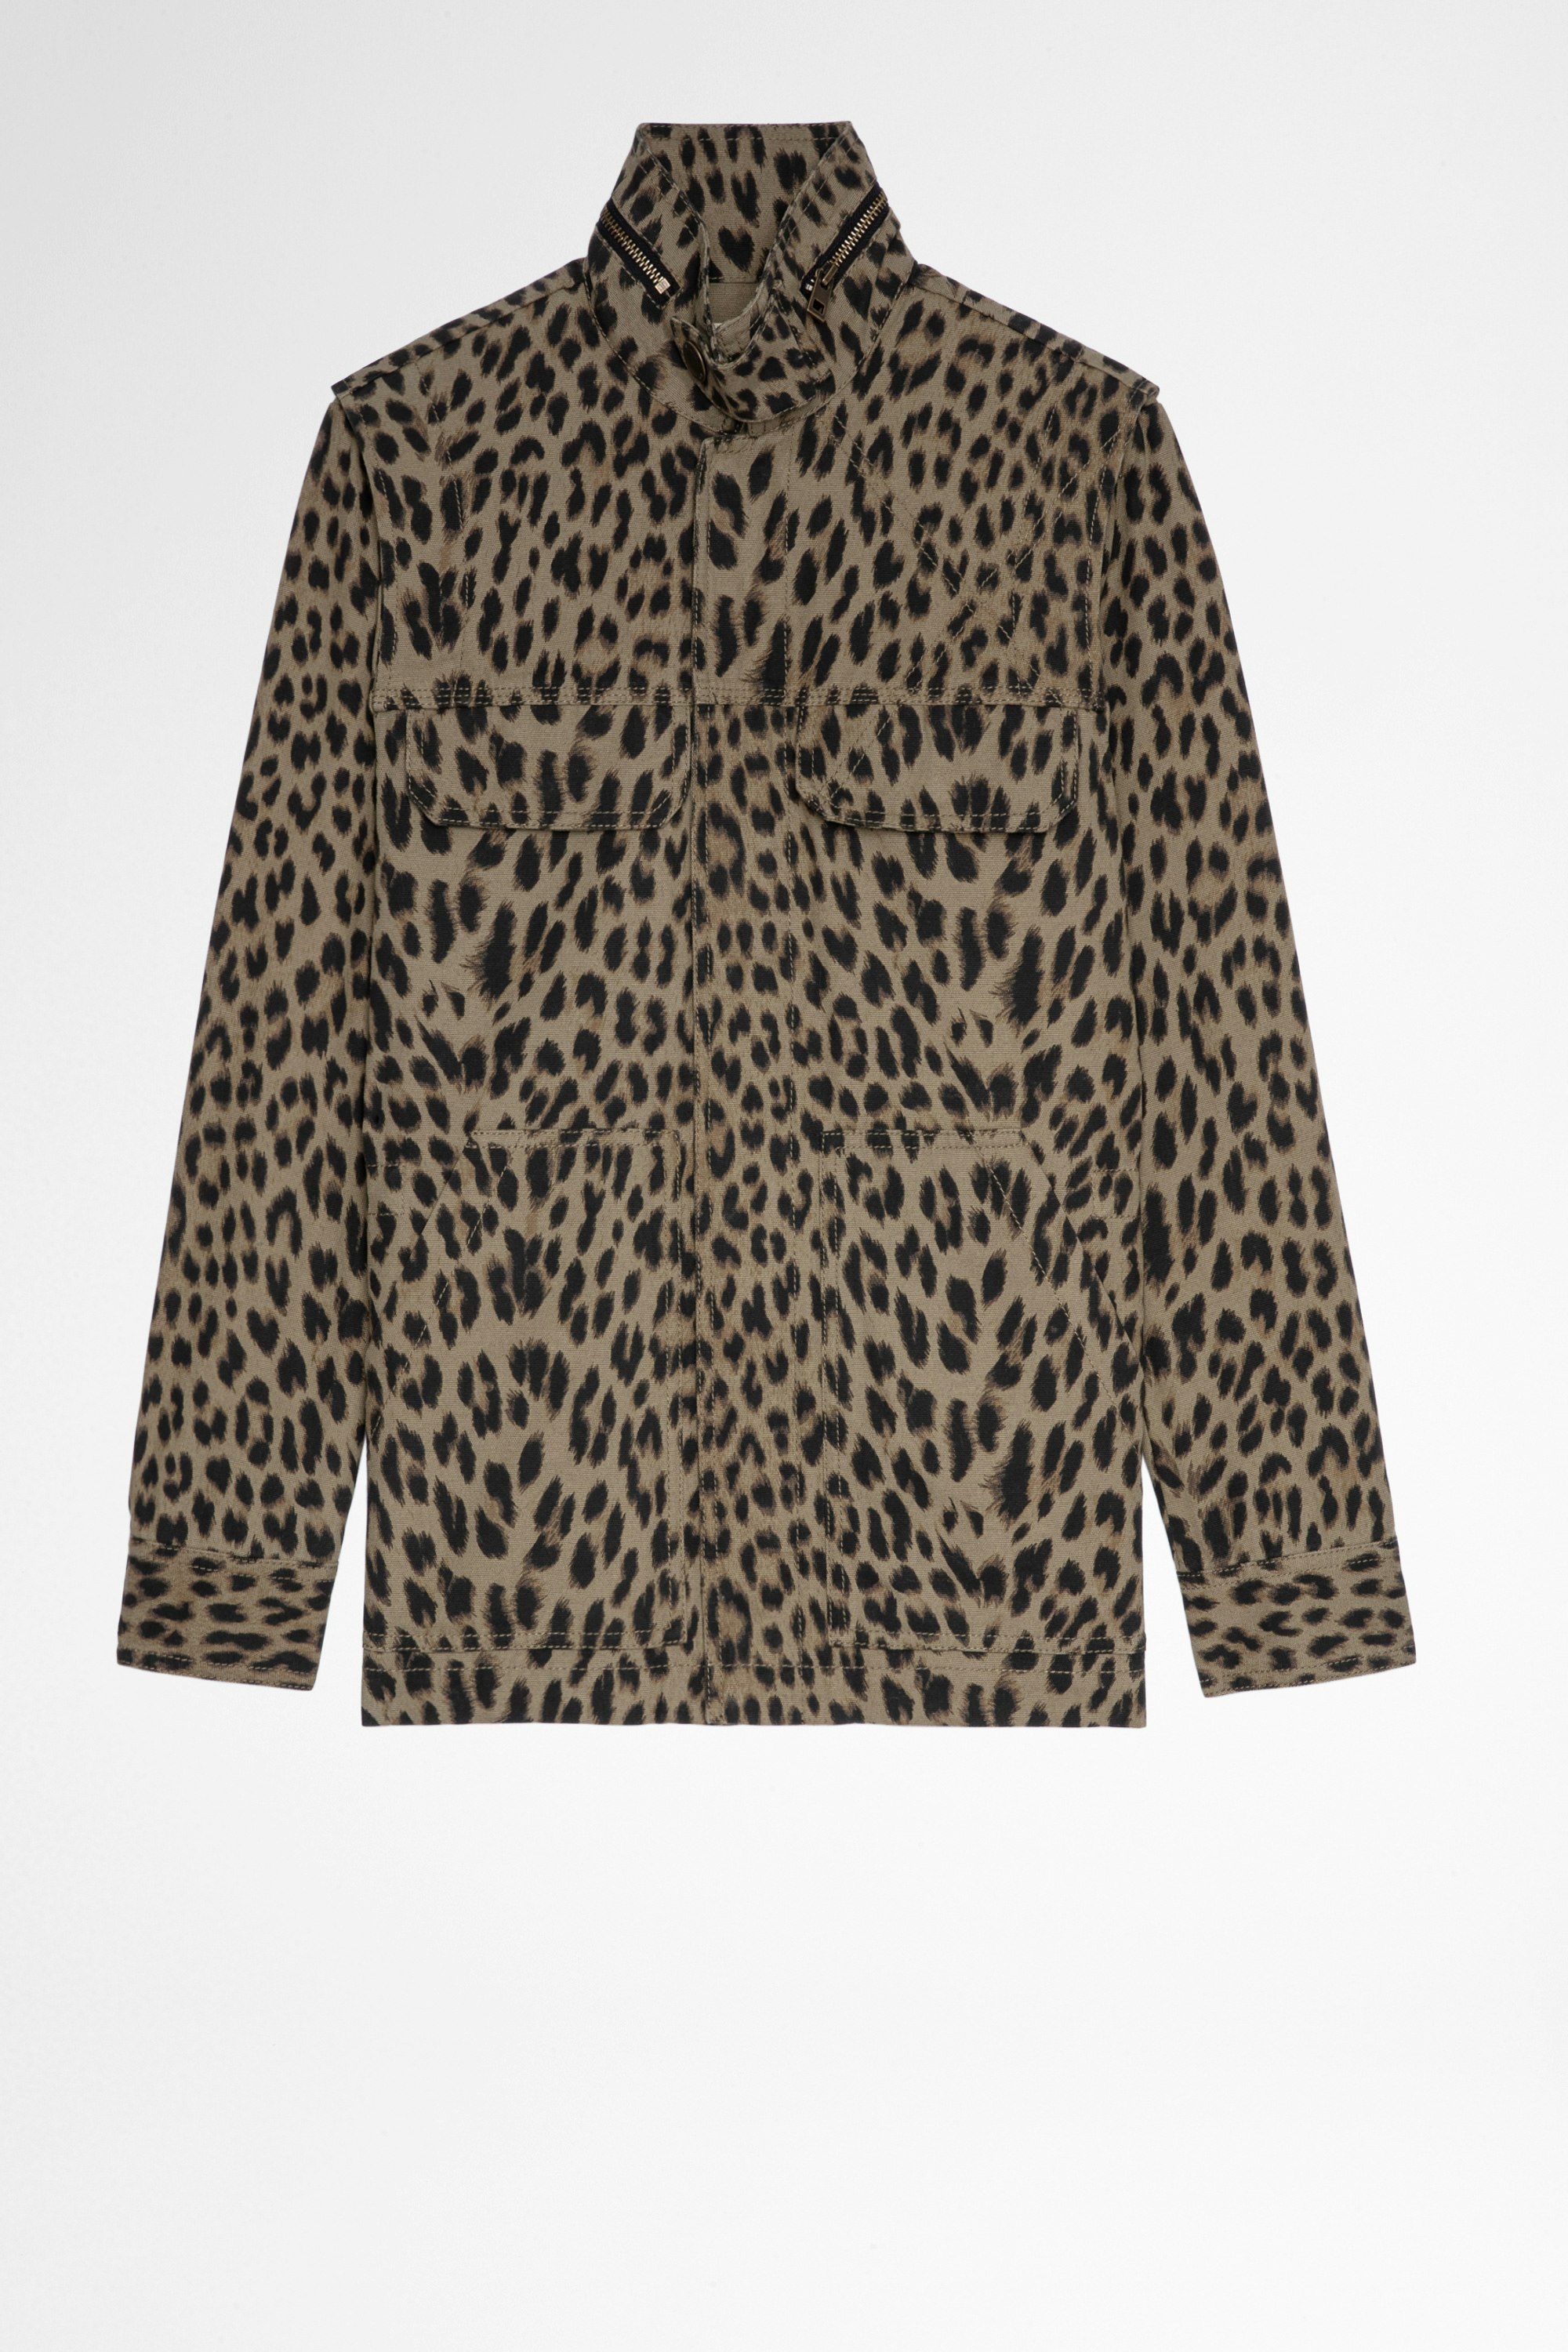 Veste Kayaka Leopard Veste en coton kaki à print léopard Femme. Fait avec des fibres issues de l’agriculture biologique